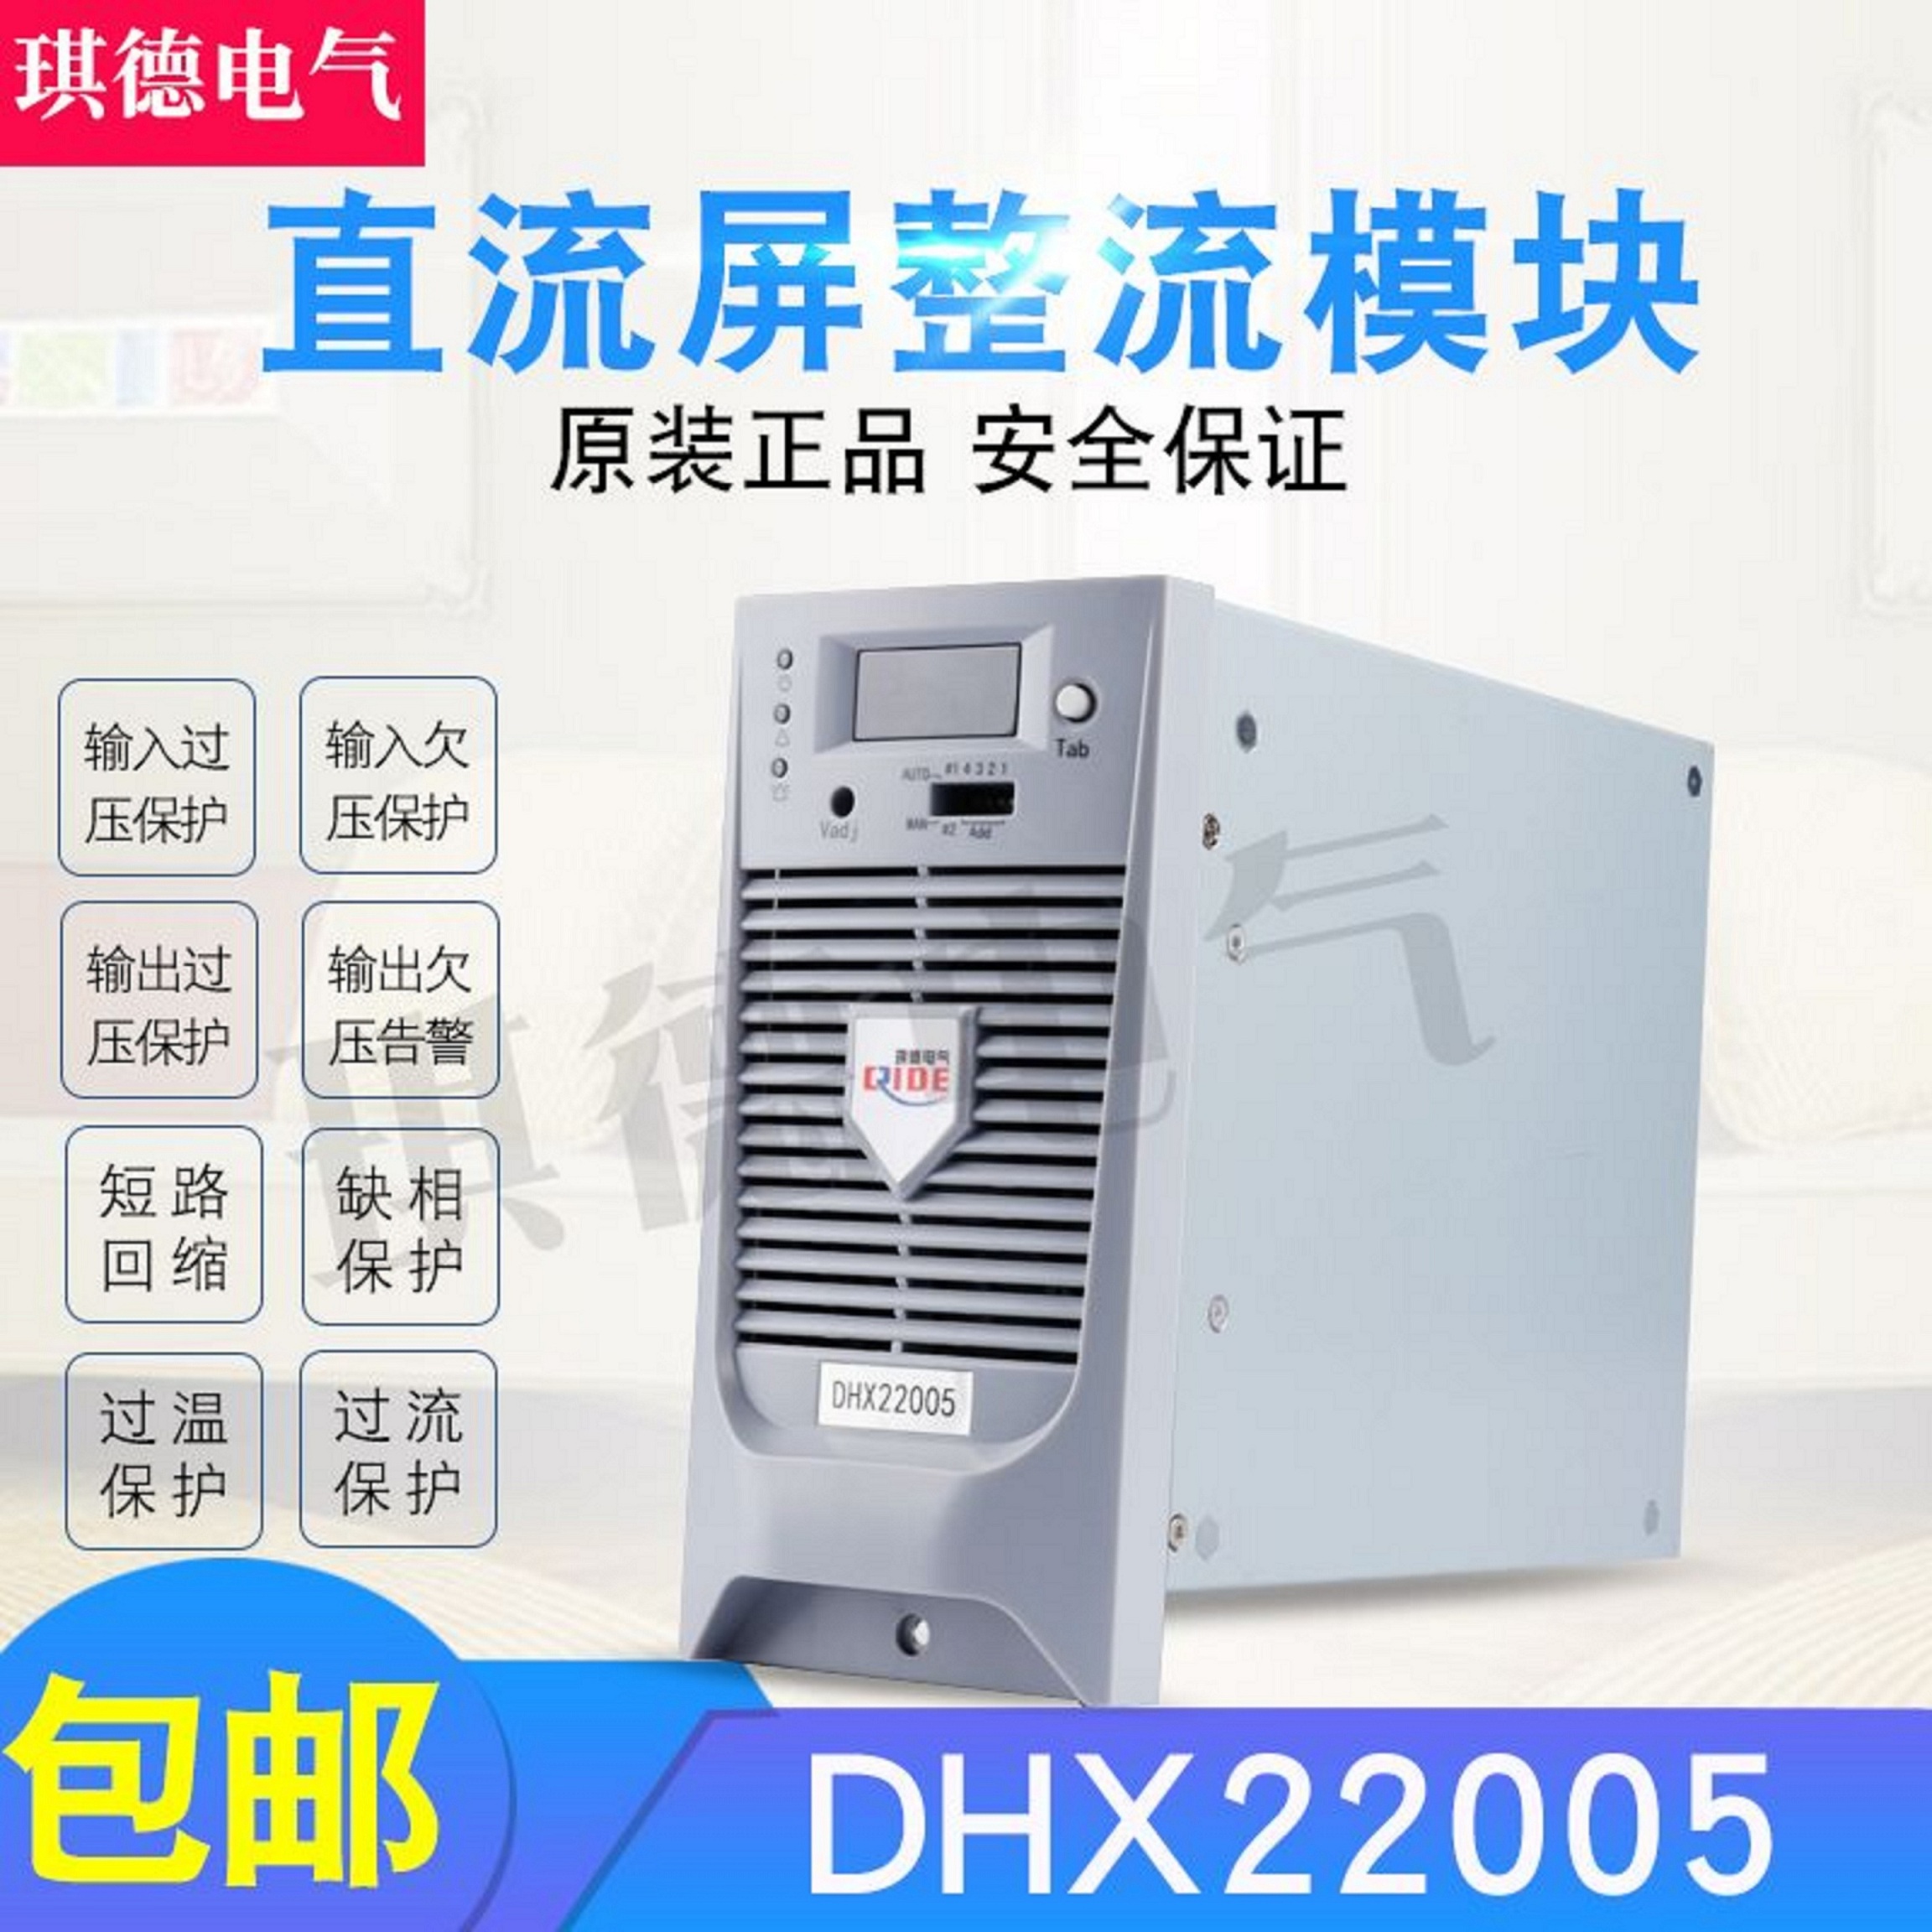 厂家供应直流屏DHX22005充电模块DHX22010电源模块